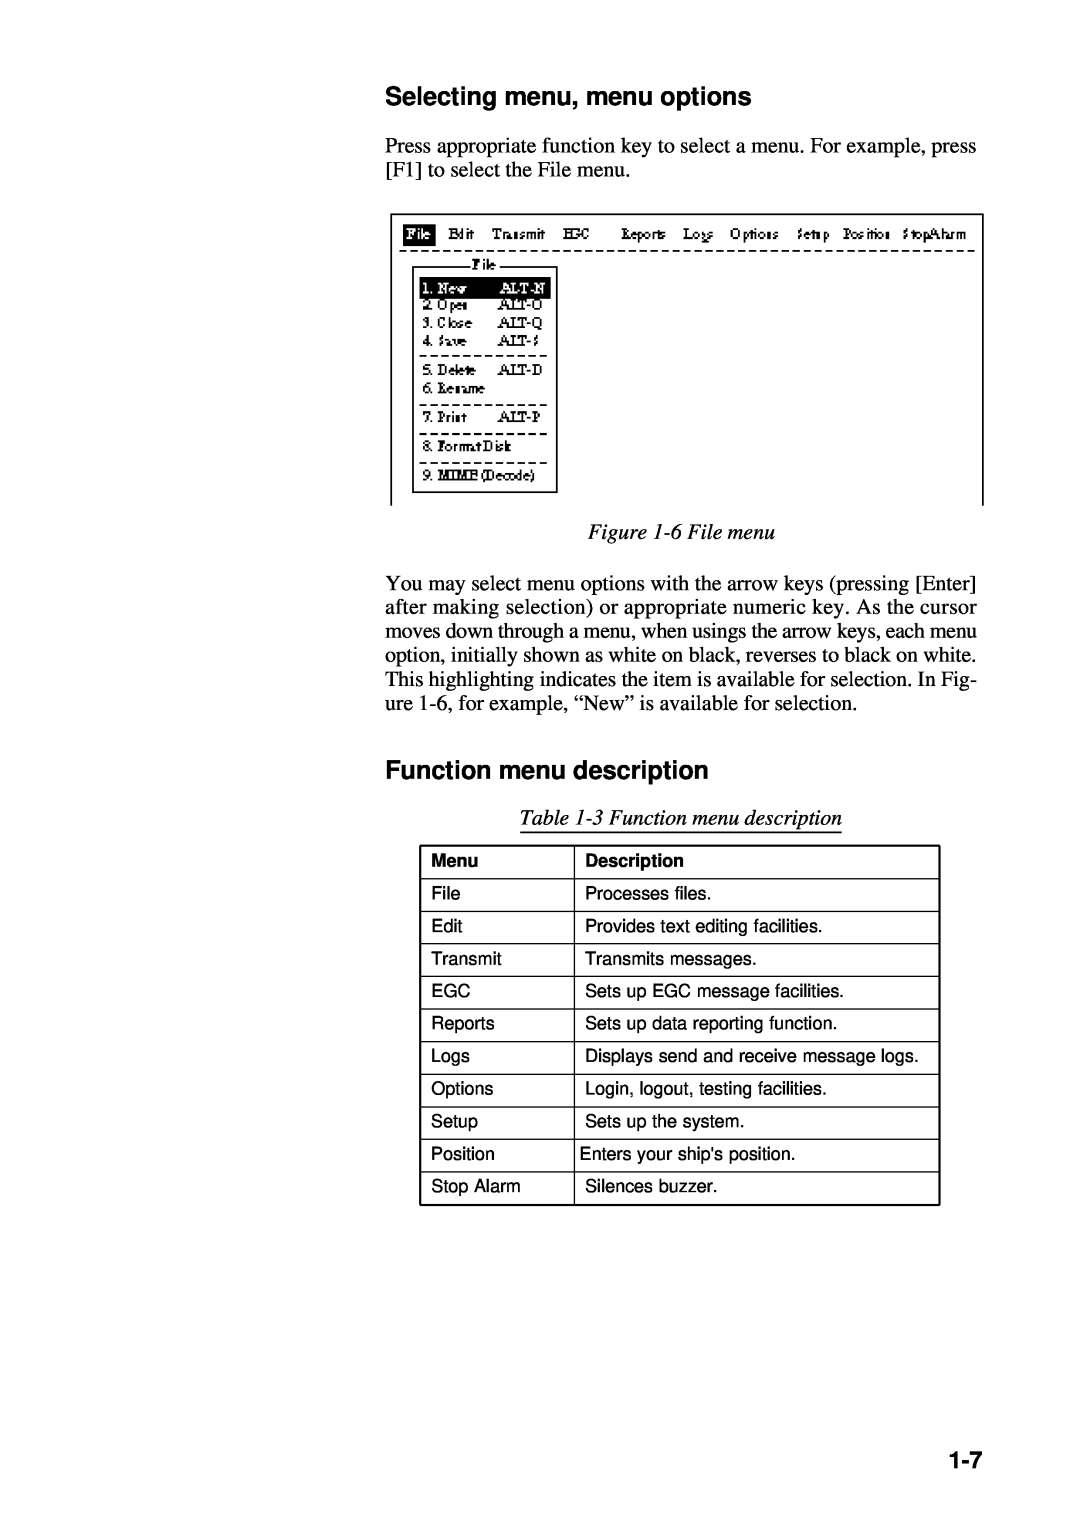 Furuno RC-1500-1T manual Selecting menu, menu options, 6 File menu, 3 Function menu description 